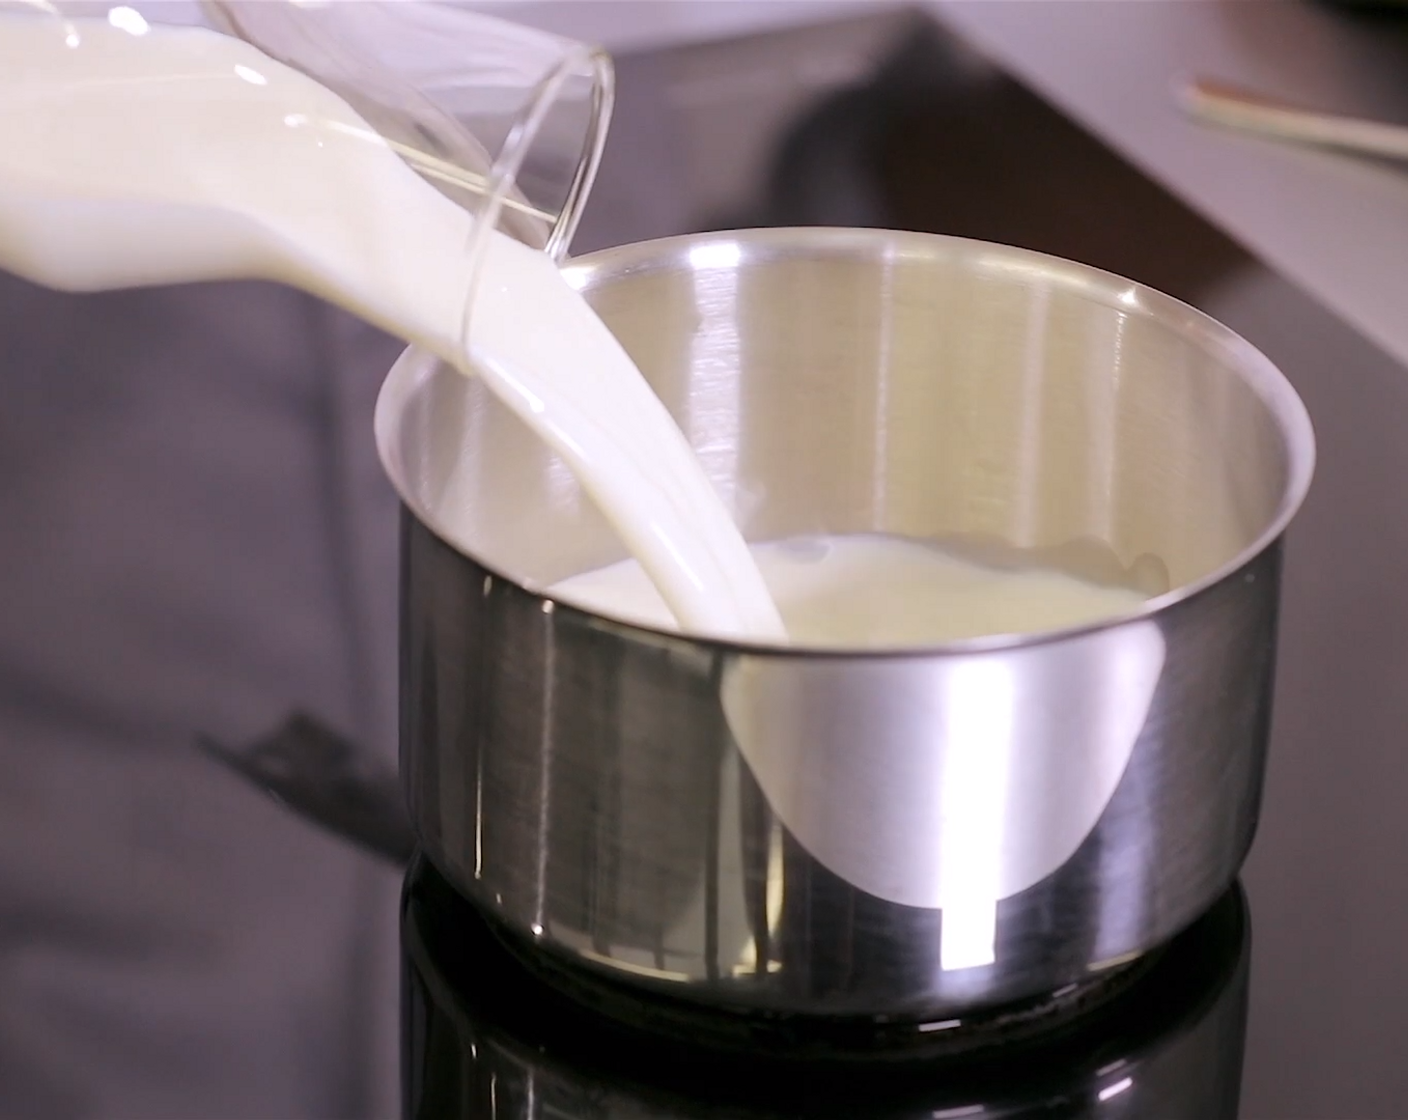 Schritt 1 Milch (400 ml) und Salz (nach Bedarf) in eine Pfanne geben und kurz aufkochen. Reis (80 g) beigeben und unter gelegentlichem Rühren auf kleiner Stufe köcheln lassen, bis er gar ist. Danach den Milchreis auskühlen lassen.